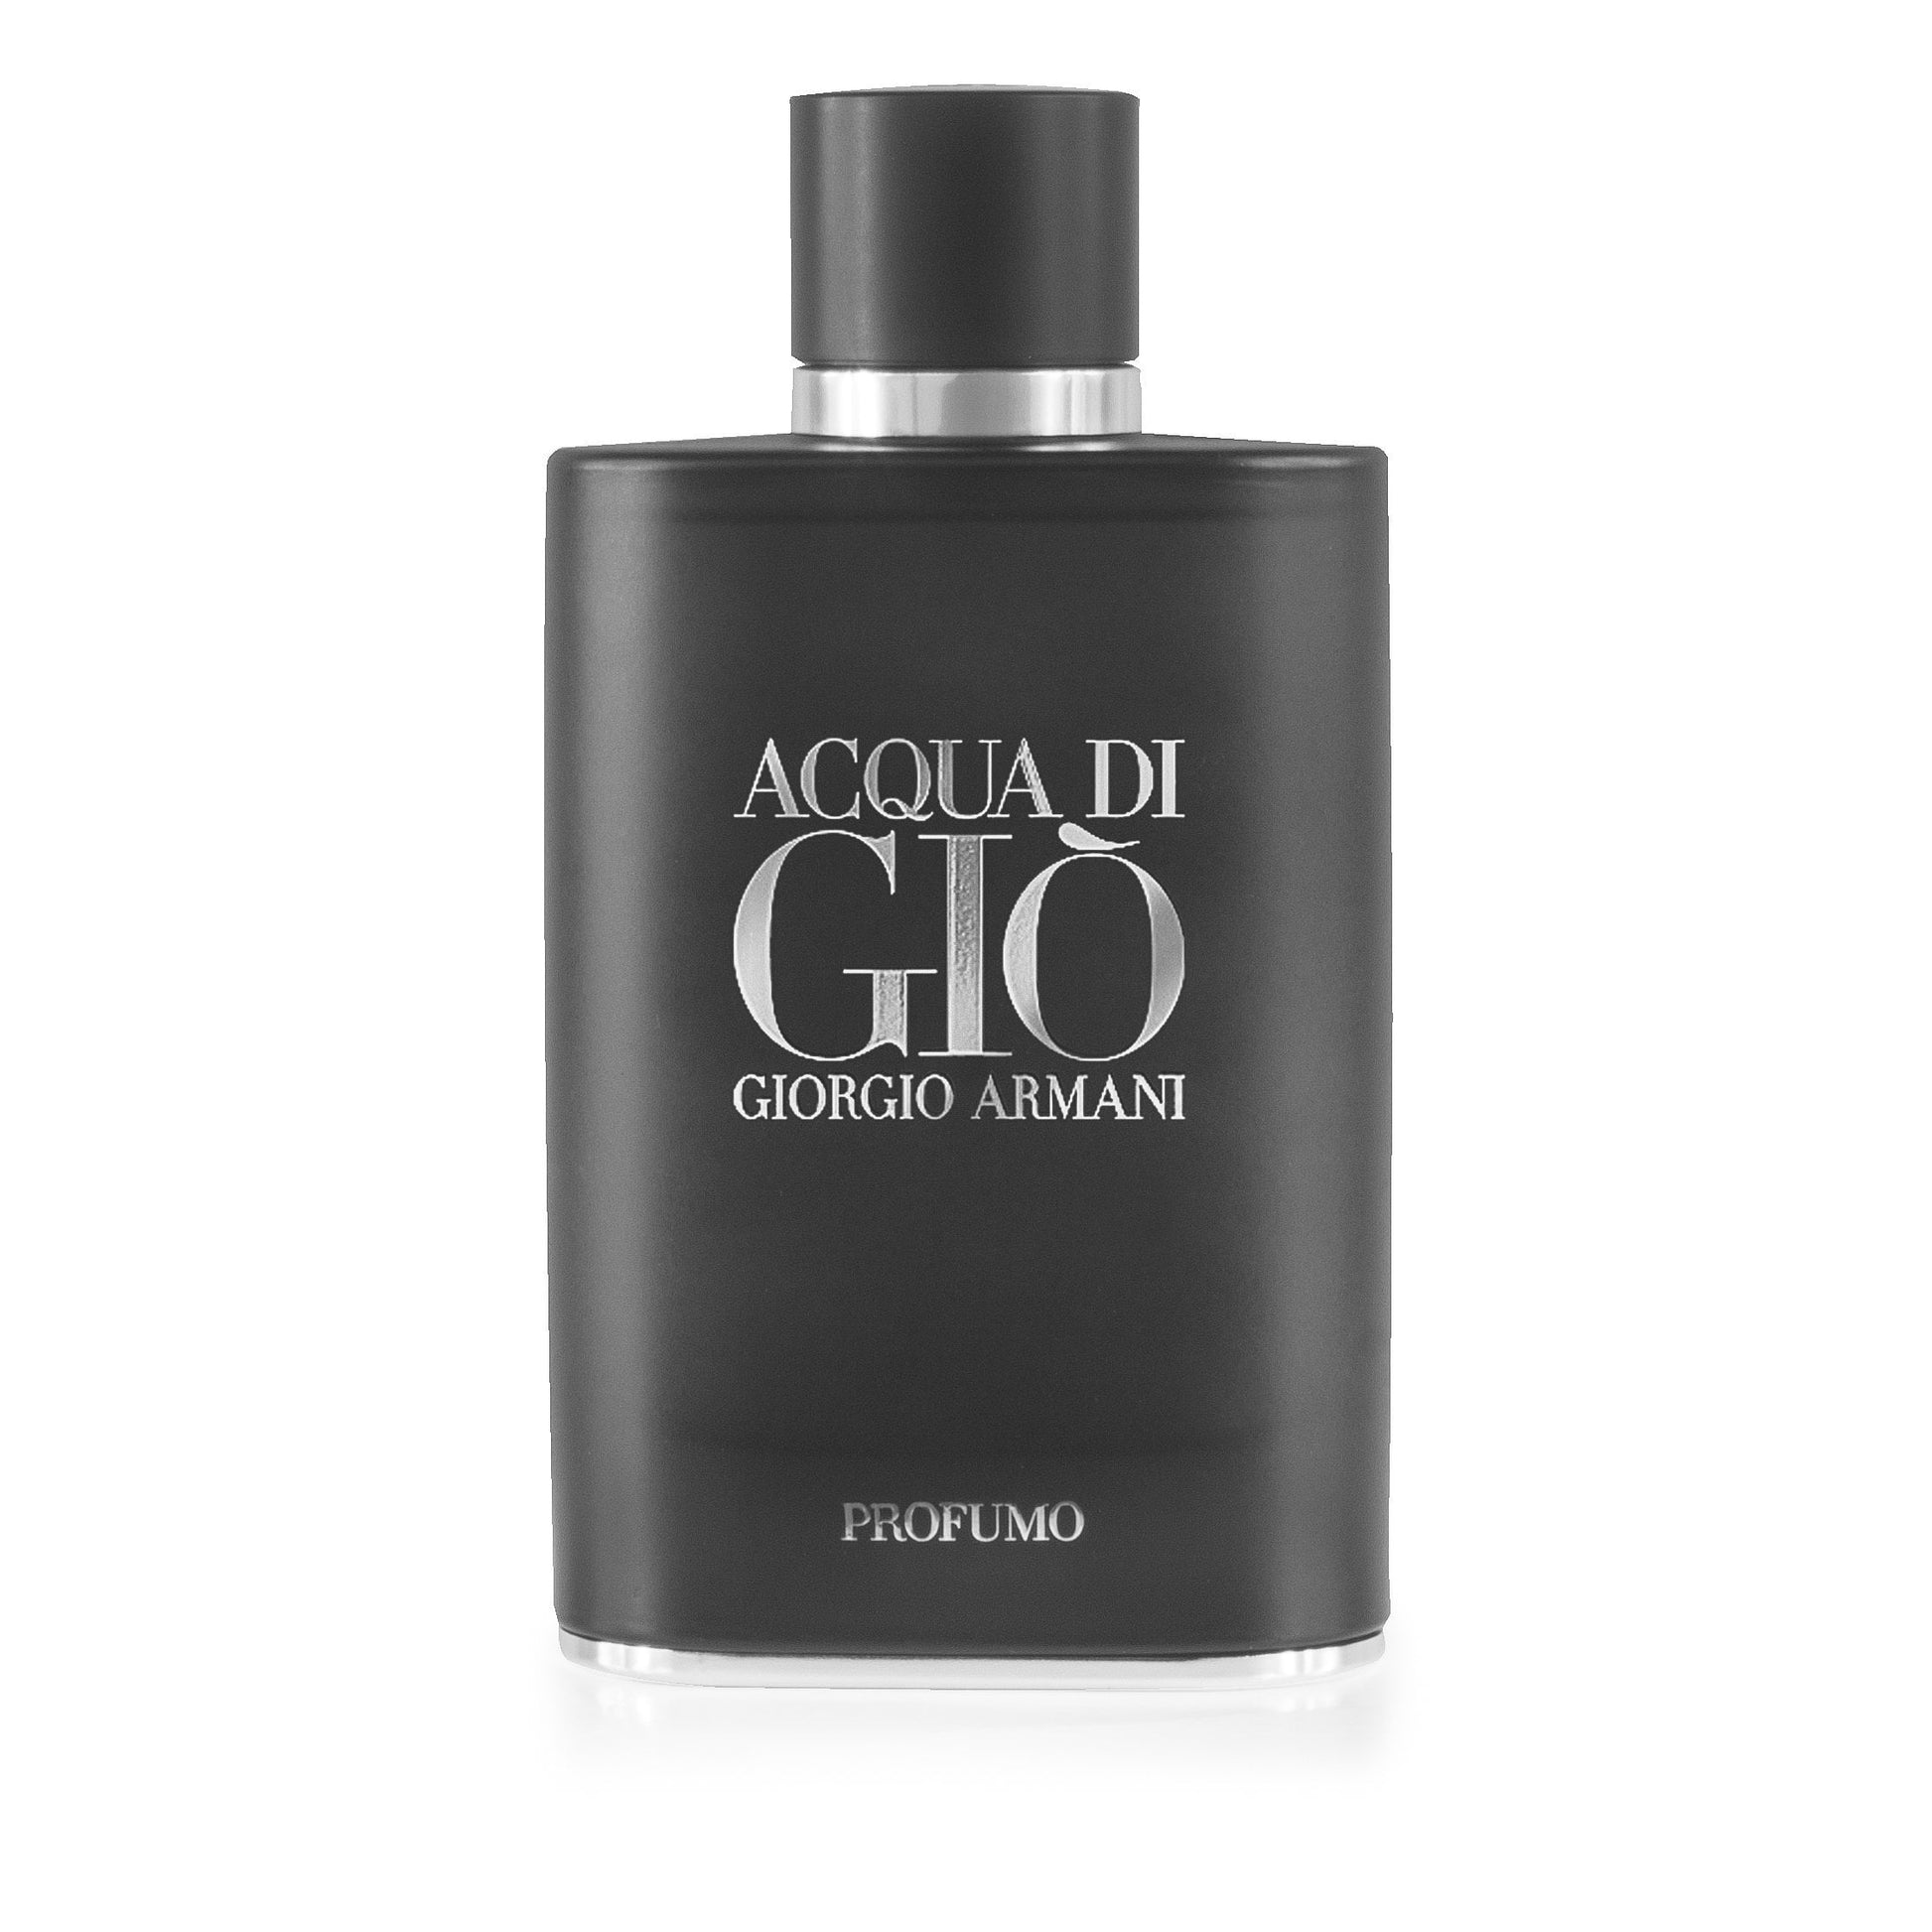 Acqua Di Gio Profumo Parfum Spray for Men by Giorgio Armani, Product image 4